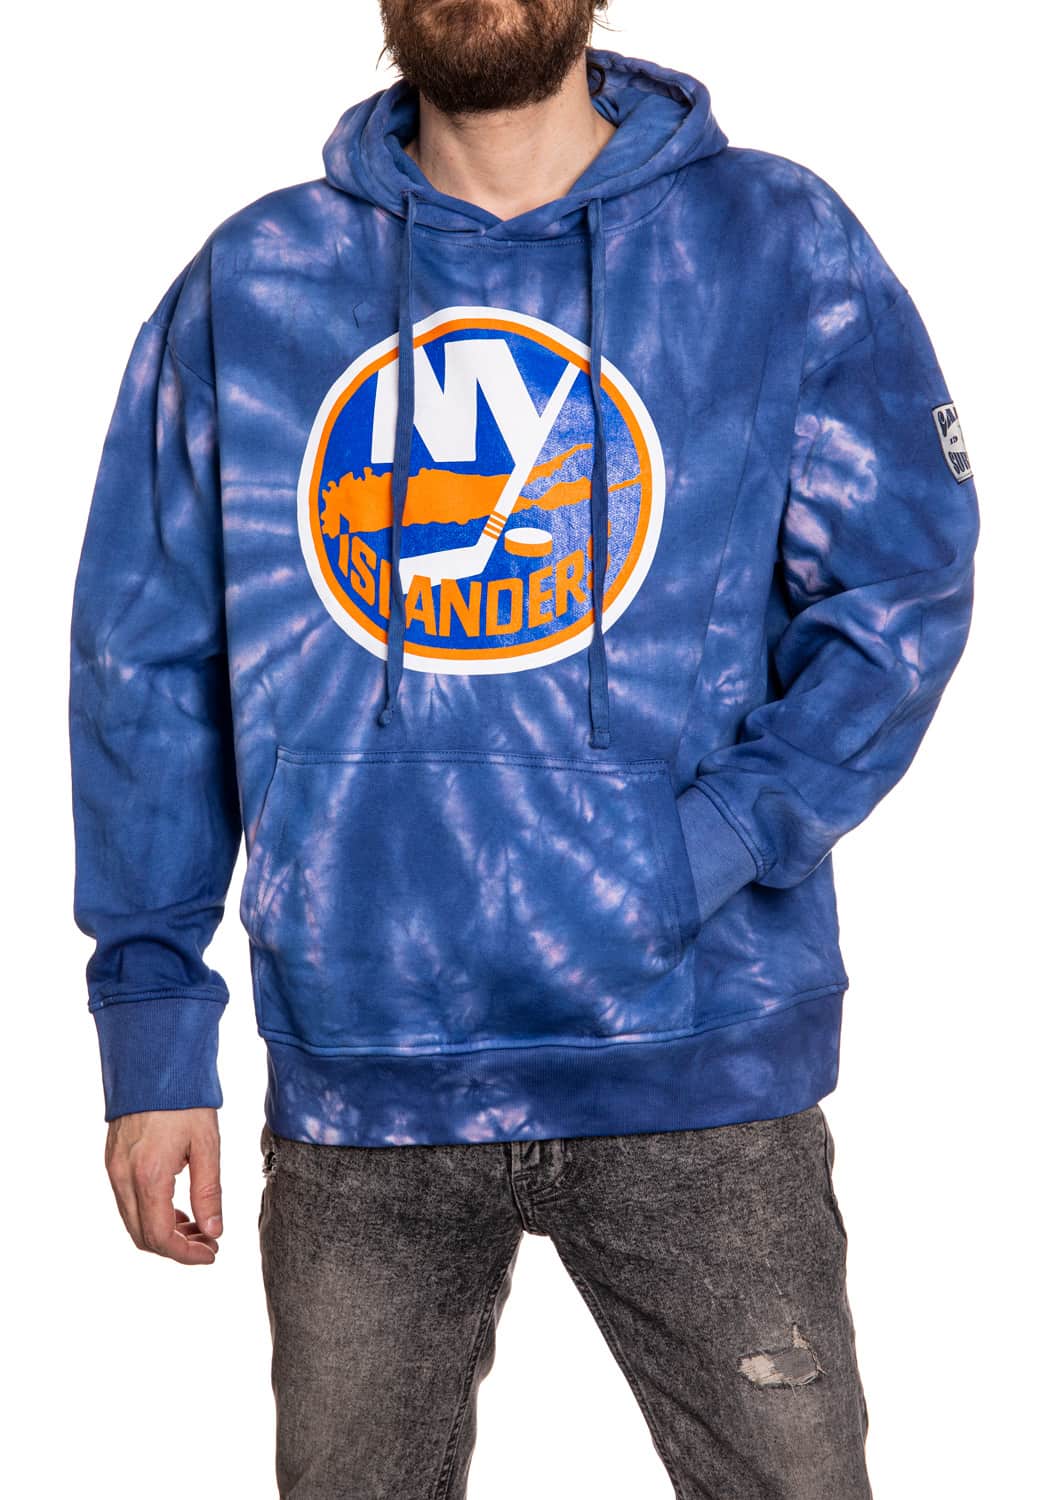 New York Islanders Spiral Tie Dye Pullover Hoodie in Blue Front View